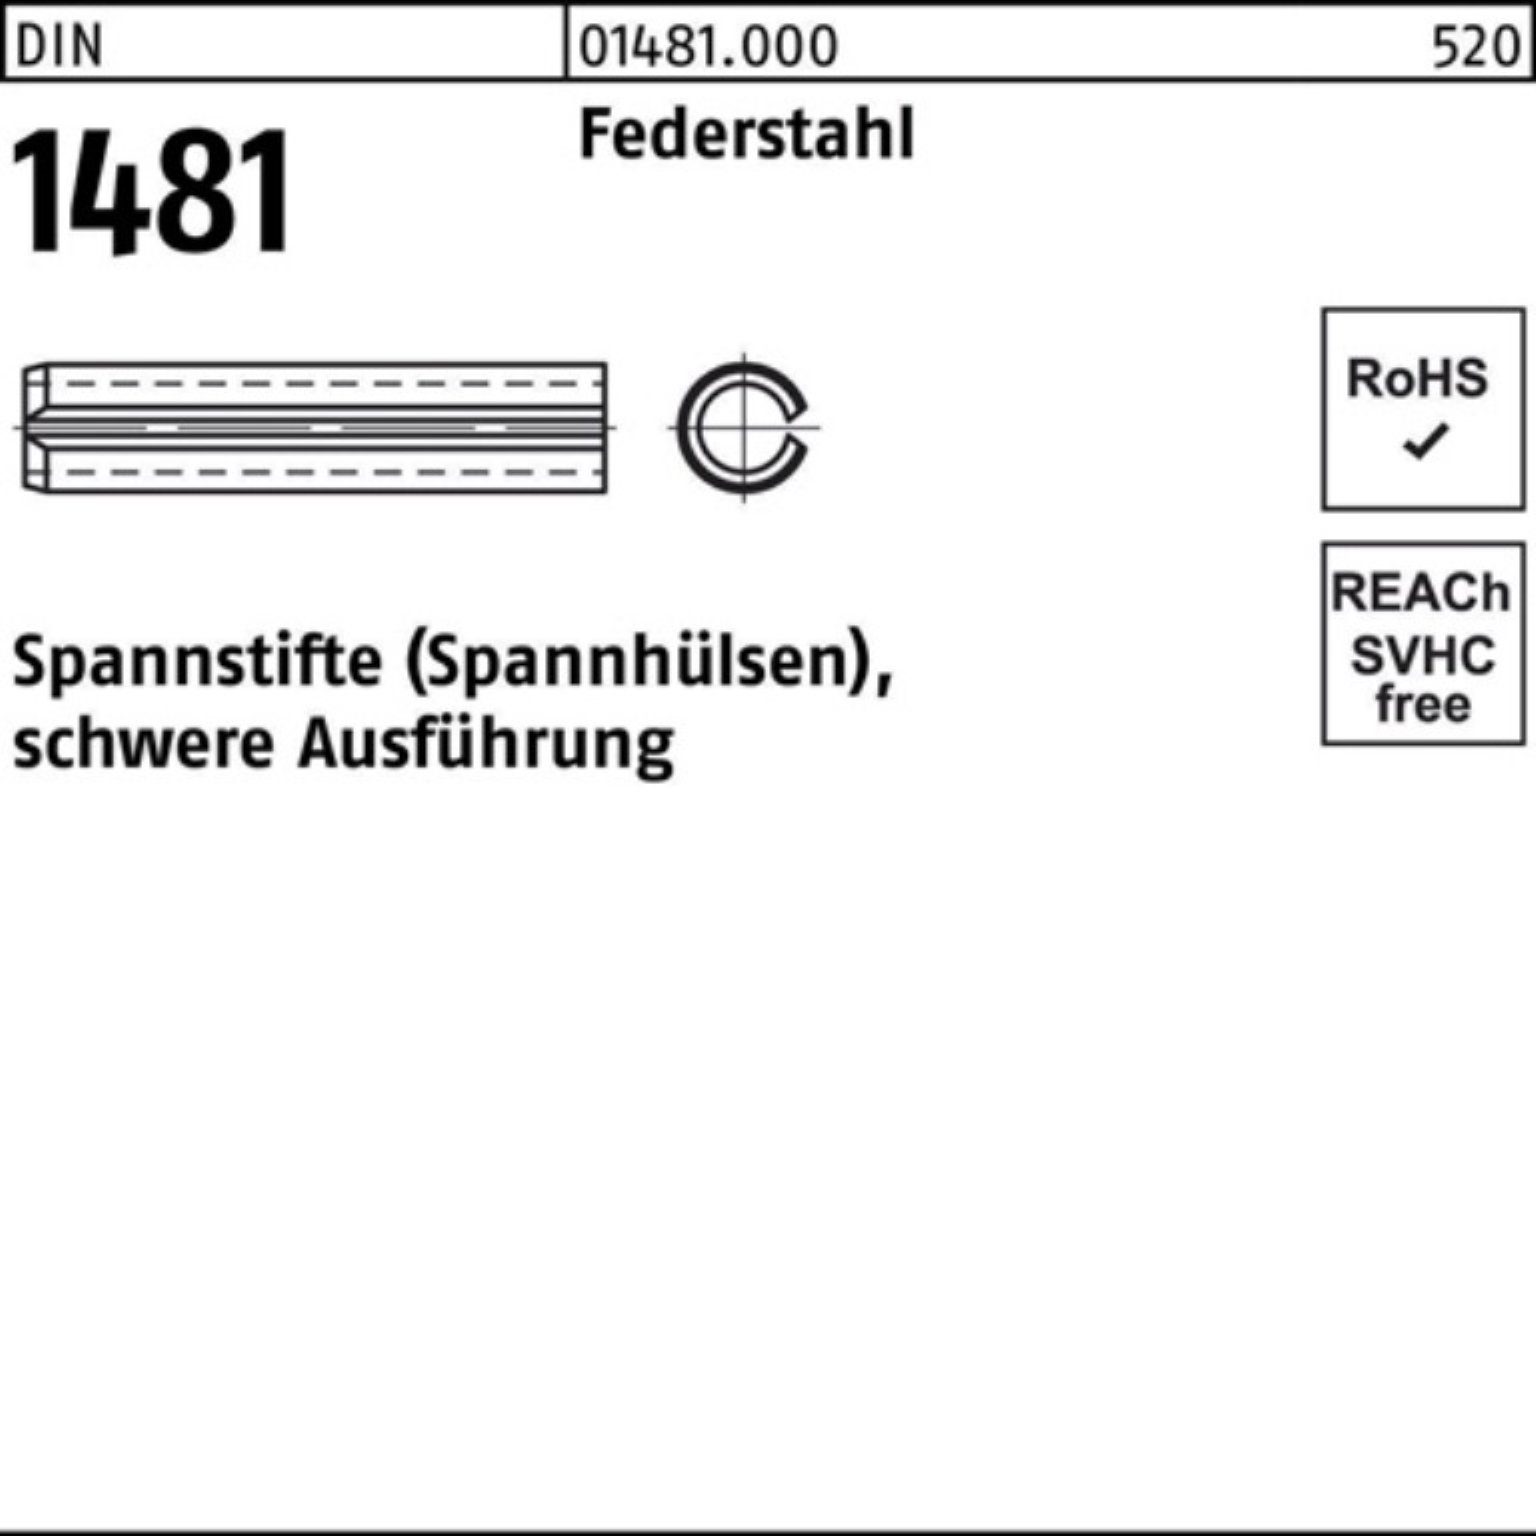 Reyher Spannstift 100er Pack Spannstift DIN 1481 18x 100 Federstahl schwere Ausführung